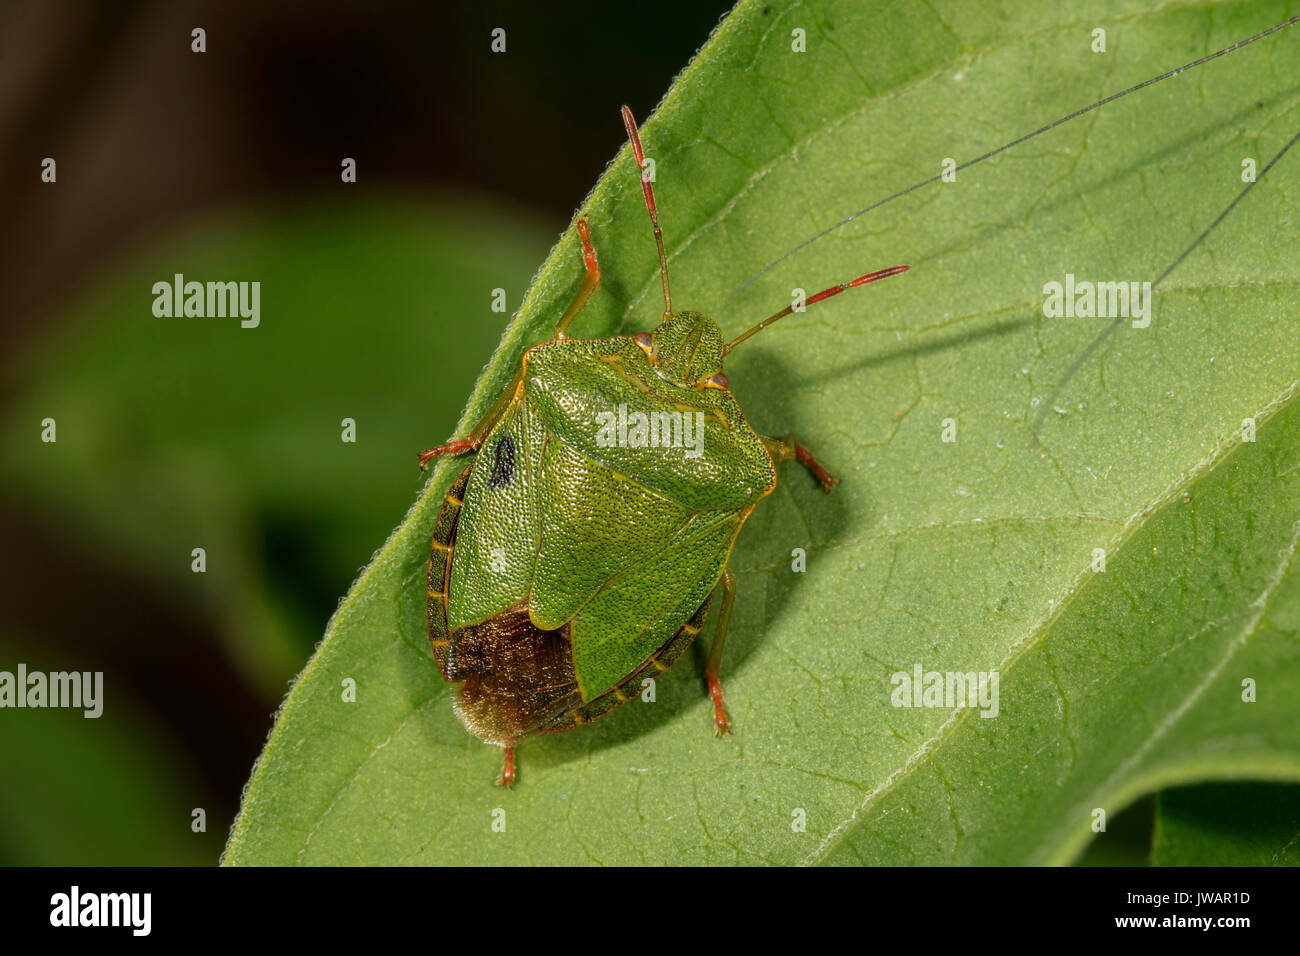 Green shield bug (Palomena prasina) on a leaf, Baden-Württemberg, Germany Stock Photo